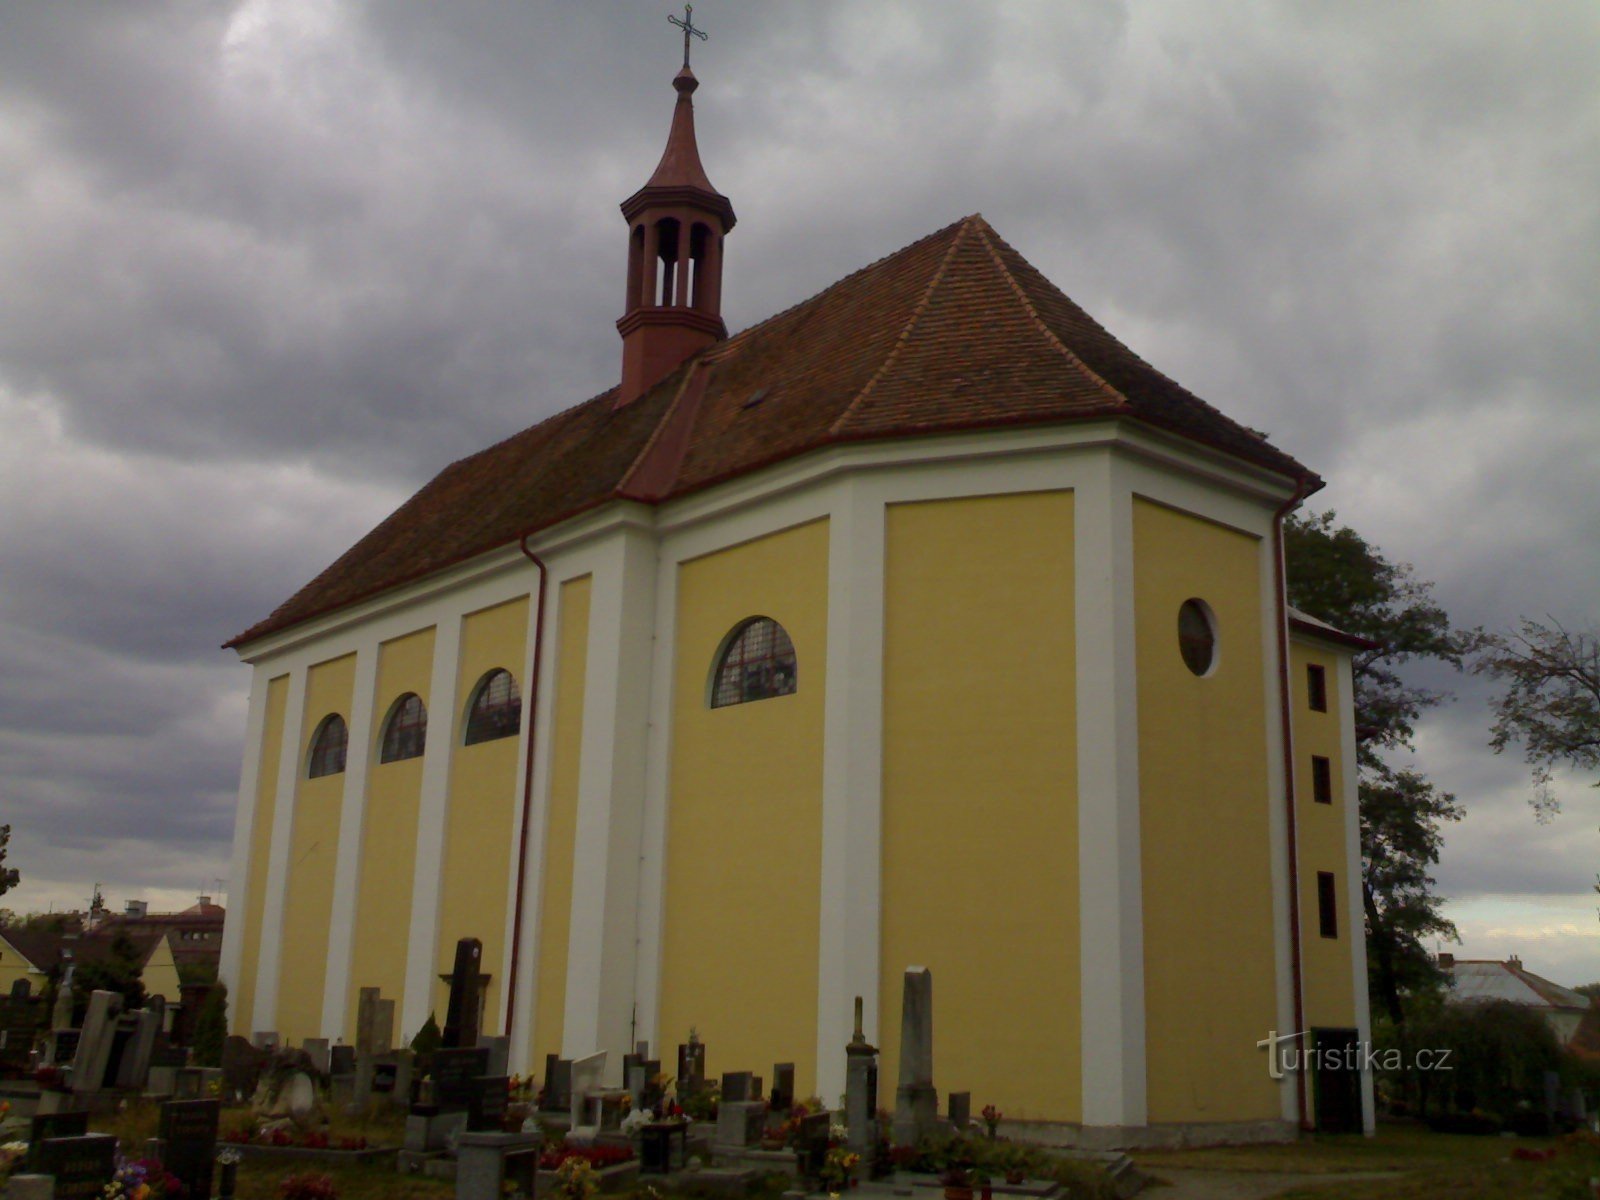 Borohrádek - 圣彼得教堂迈克尔大天使